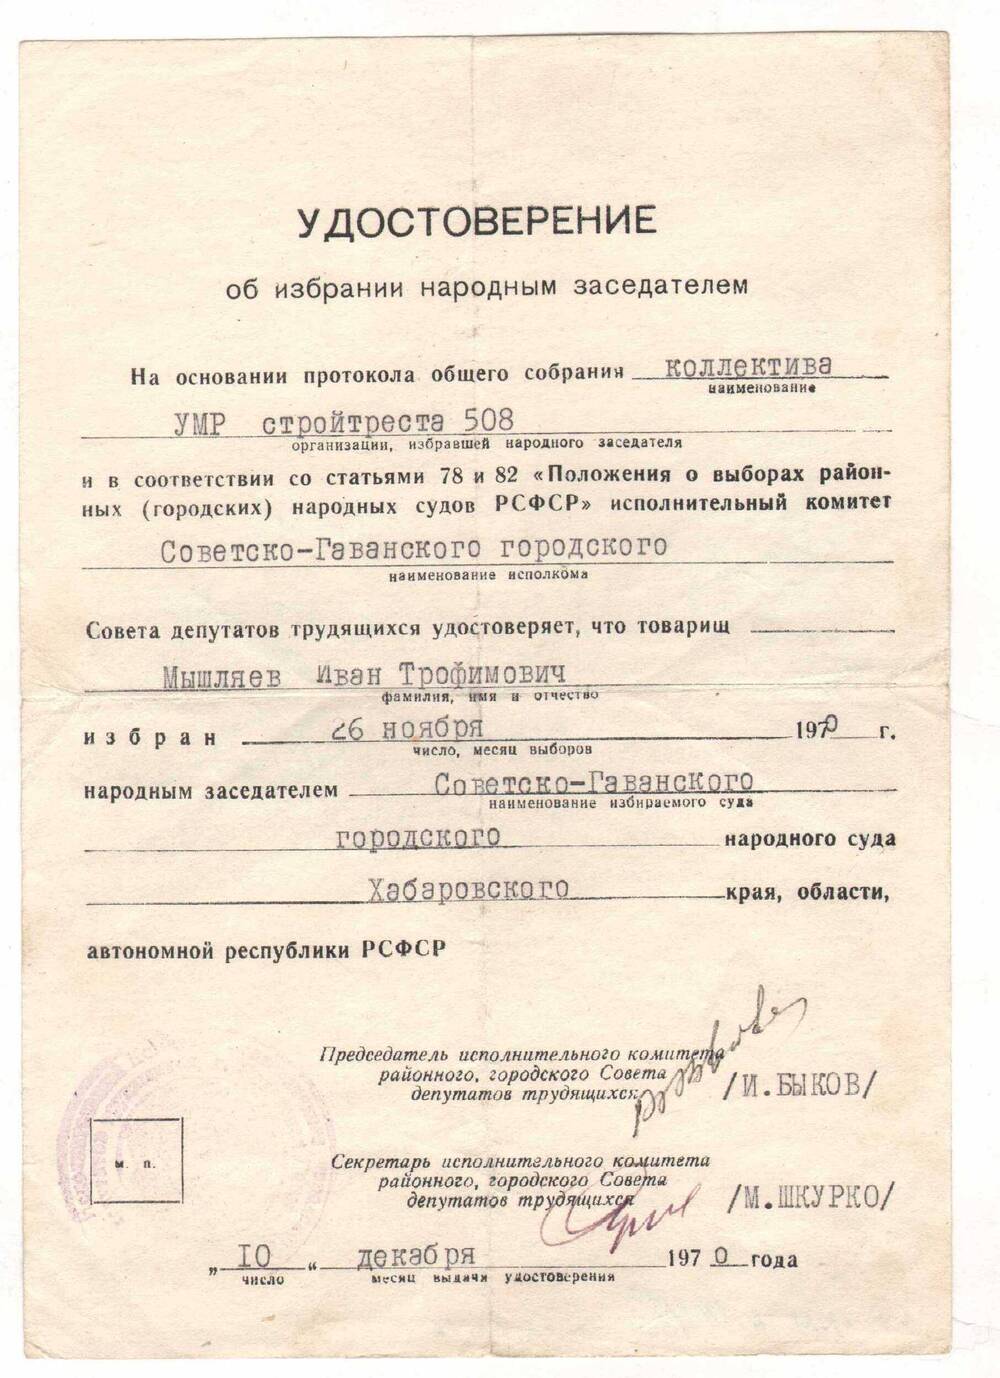 Удостоверение об избрании Мышляева И.Т. народным заседателем